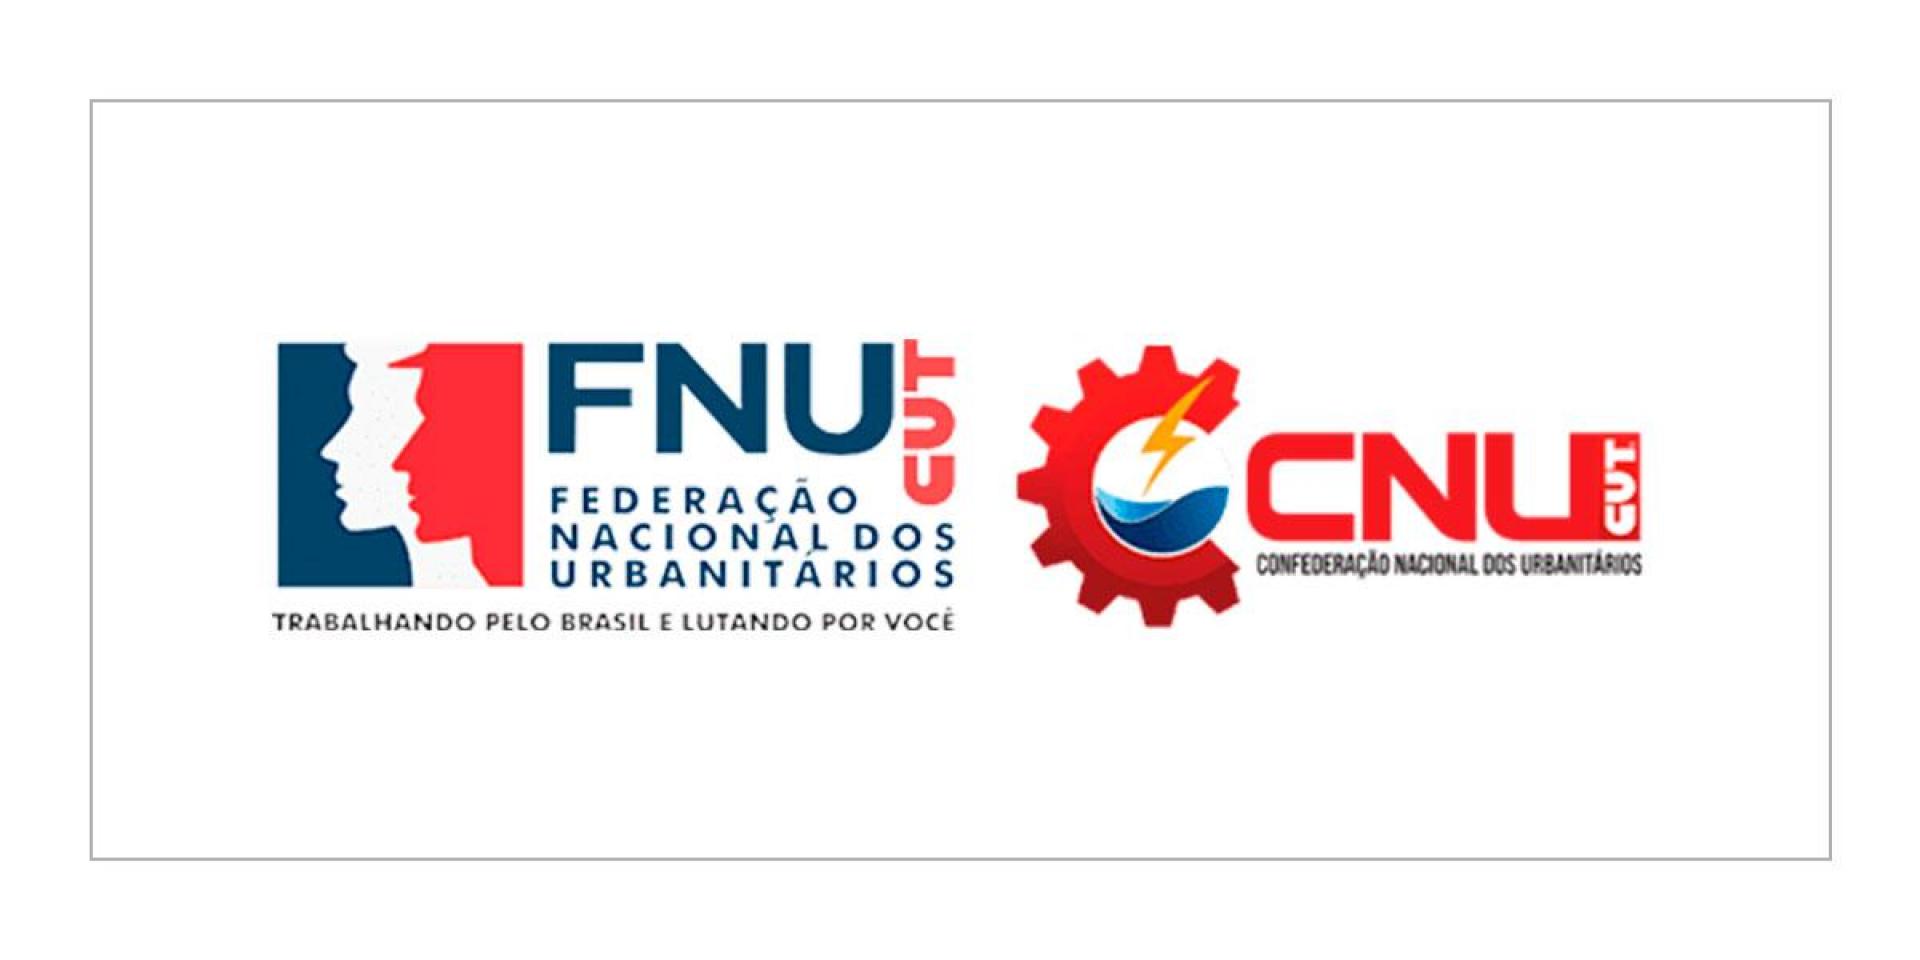 Federação Nacional dos Urbanitários